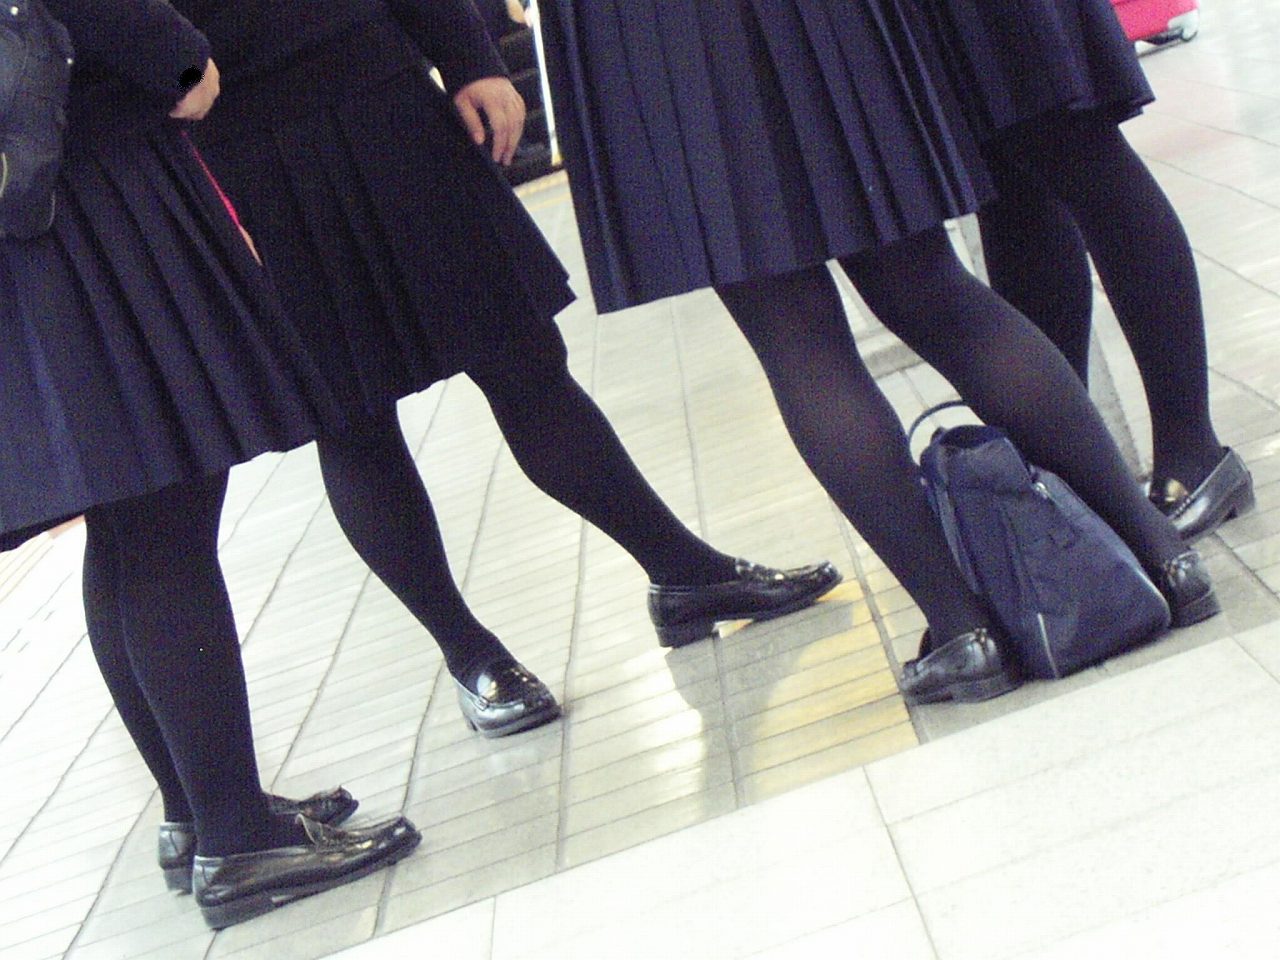 【冬服 パンチラ】黒タイツを履いた女子高生たちを華麗に盗撮 (画像36枚)011